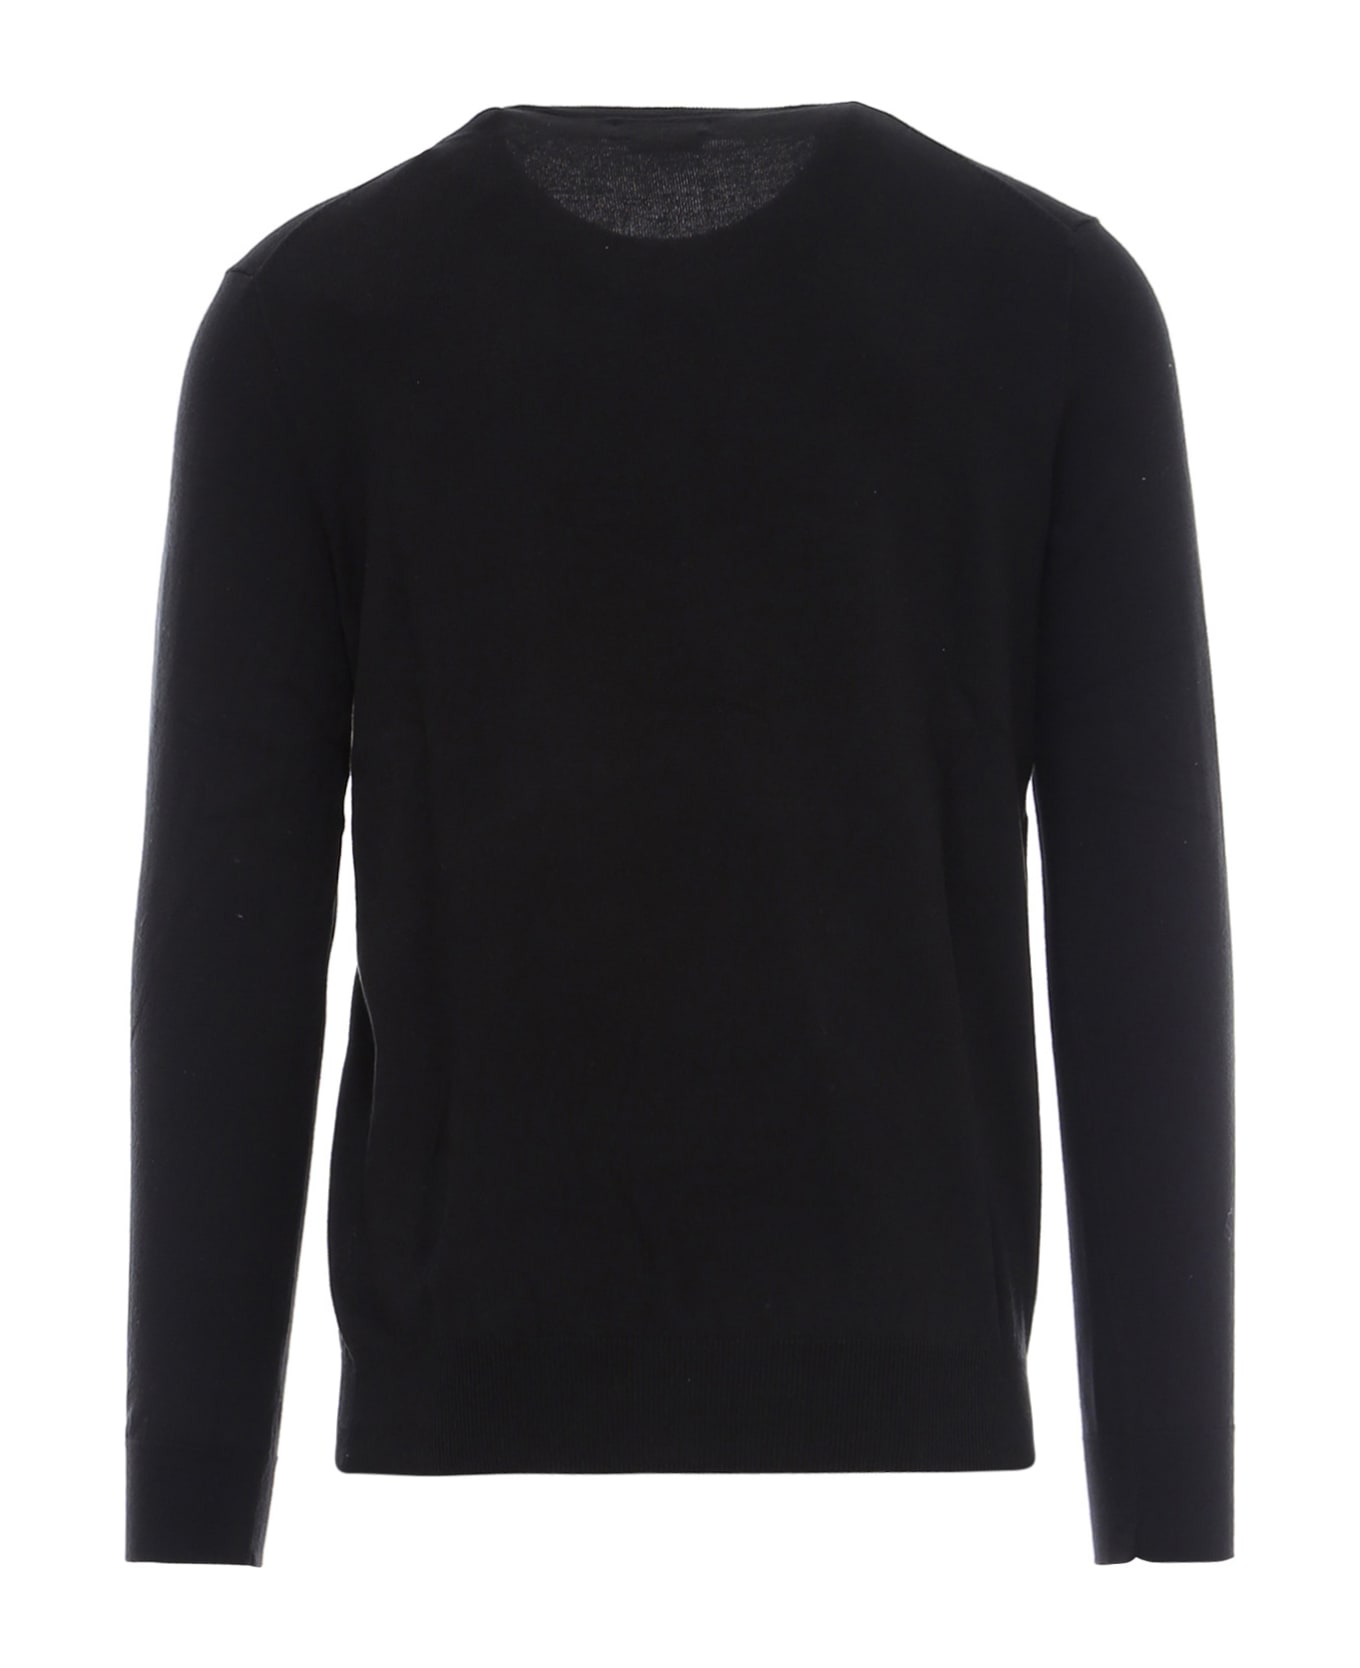 Ralph Lauren Sweater - Black